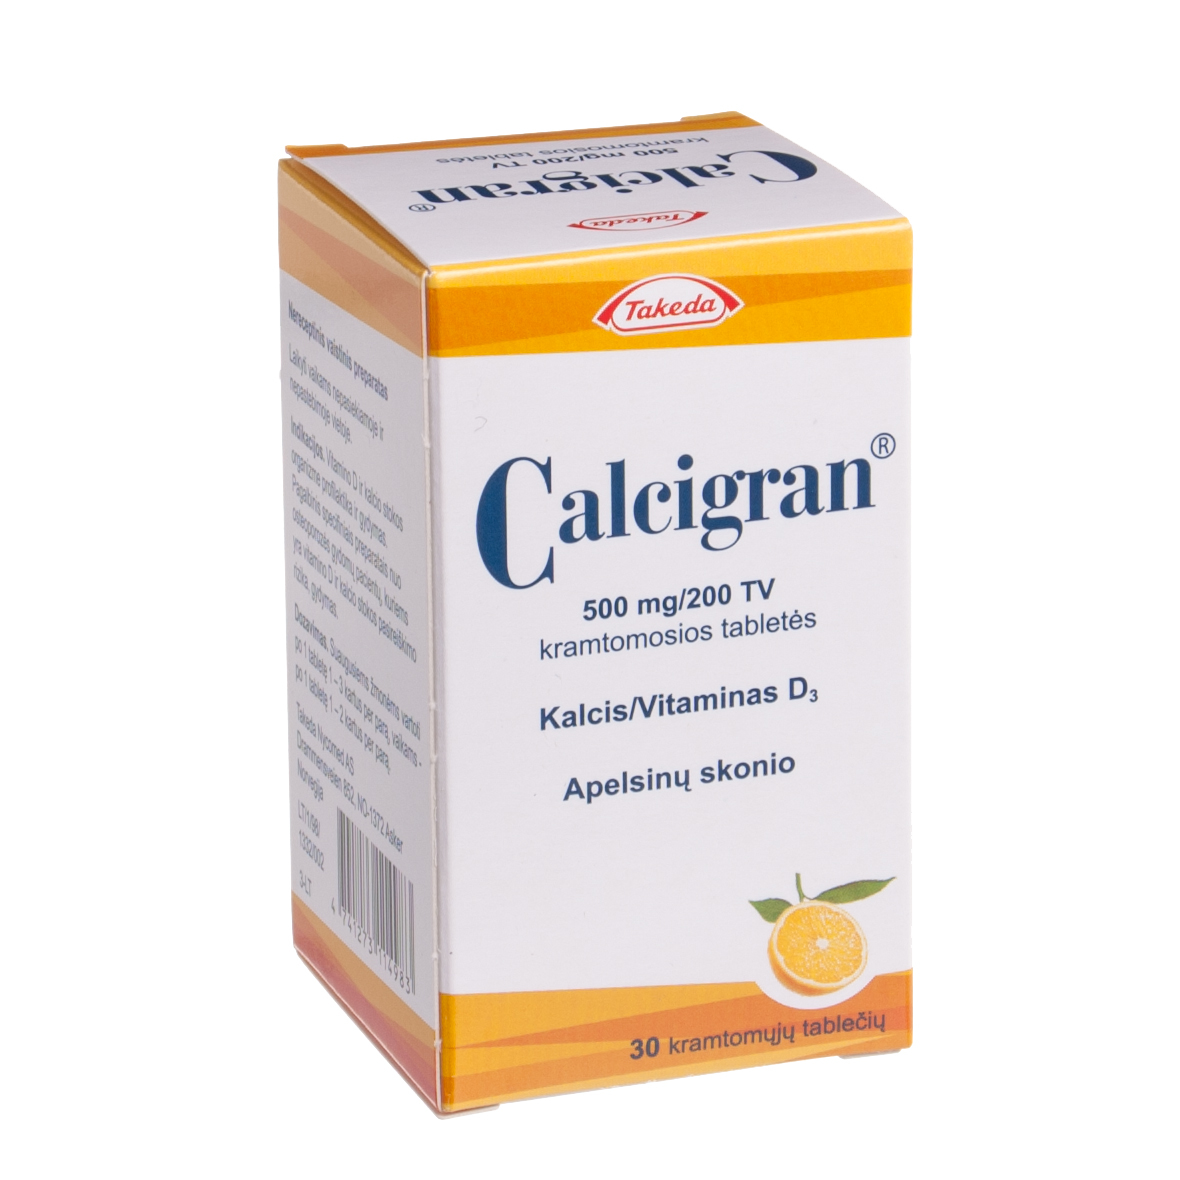 CALCIGRAN, 500 mg/200 TV, kramtomosios tabletės, N30